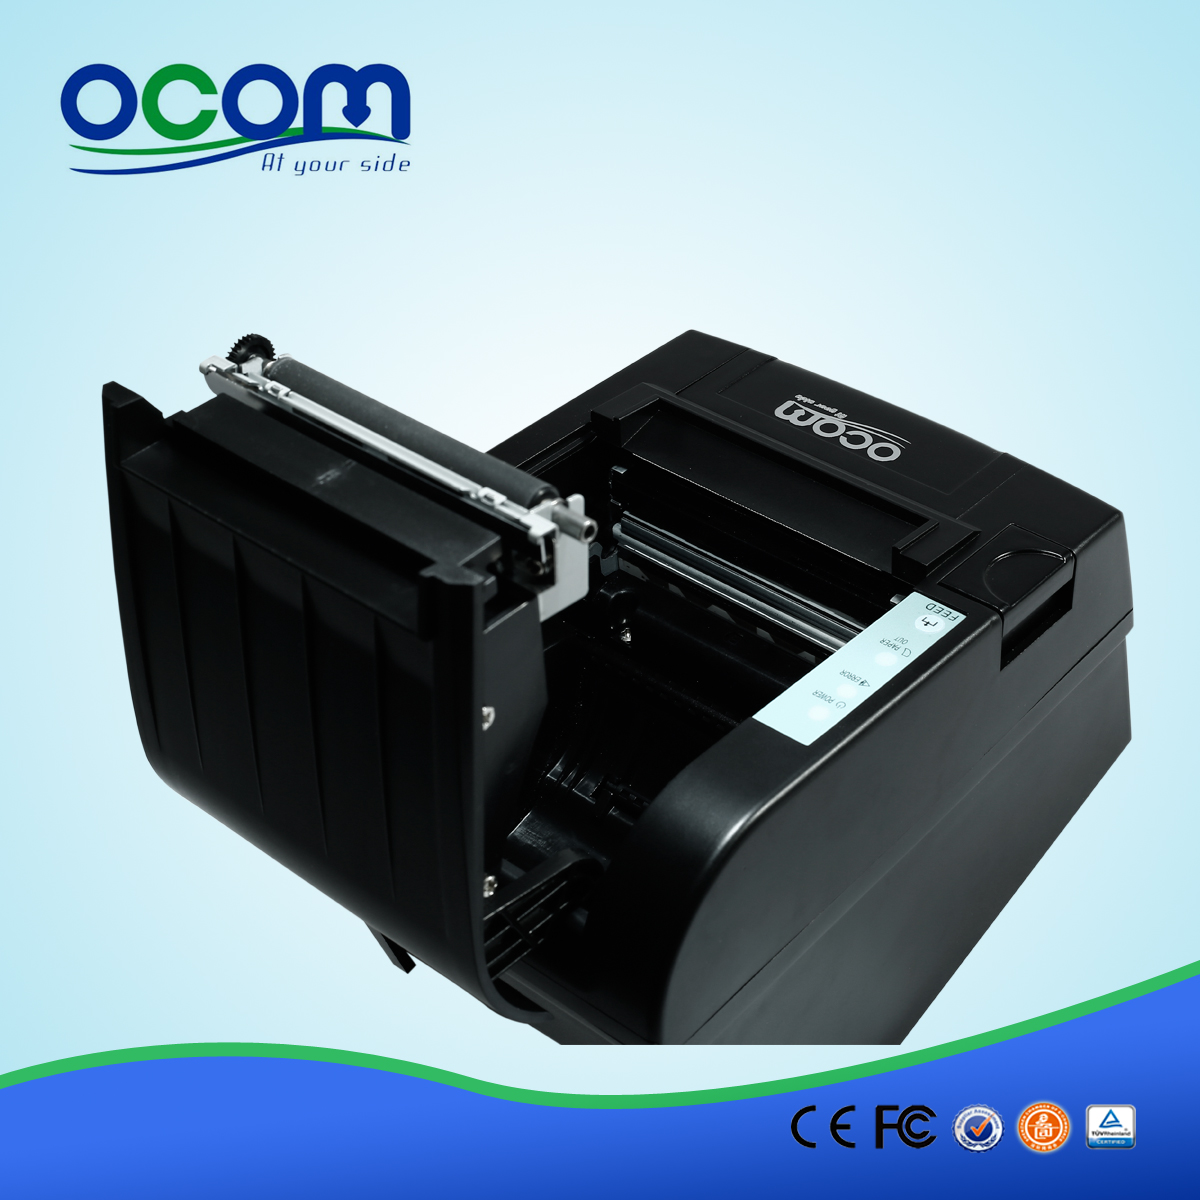 80毫米WIFI安卓热敏票据打印机 -  OCPP-806-W